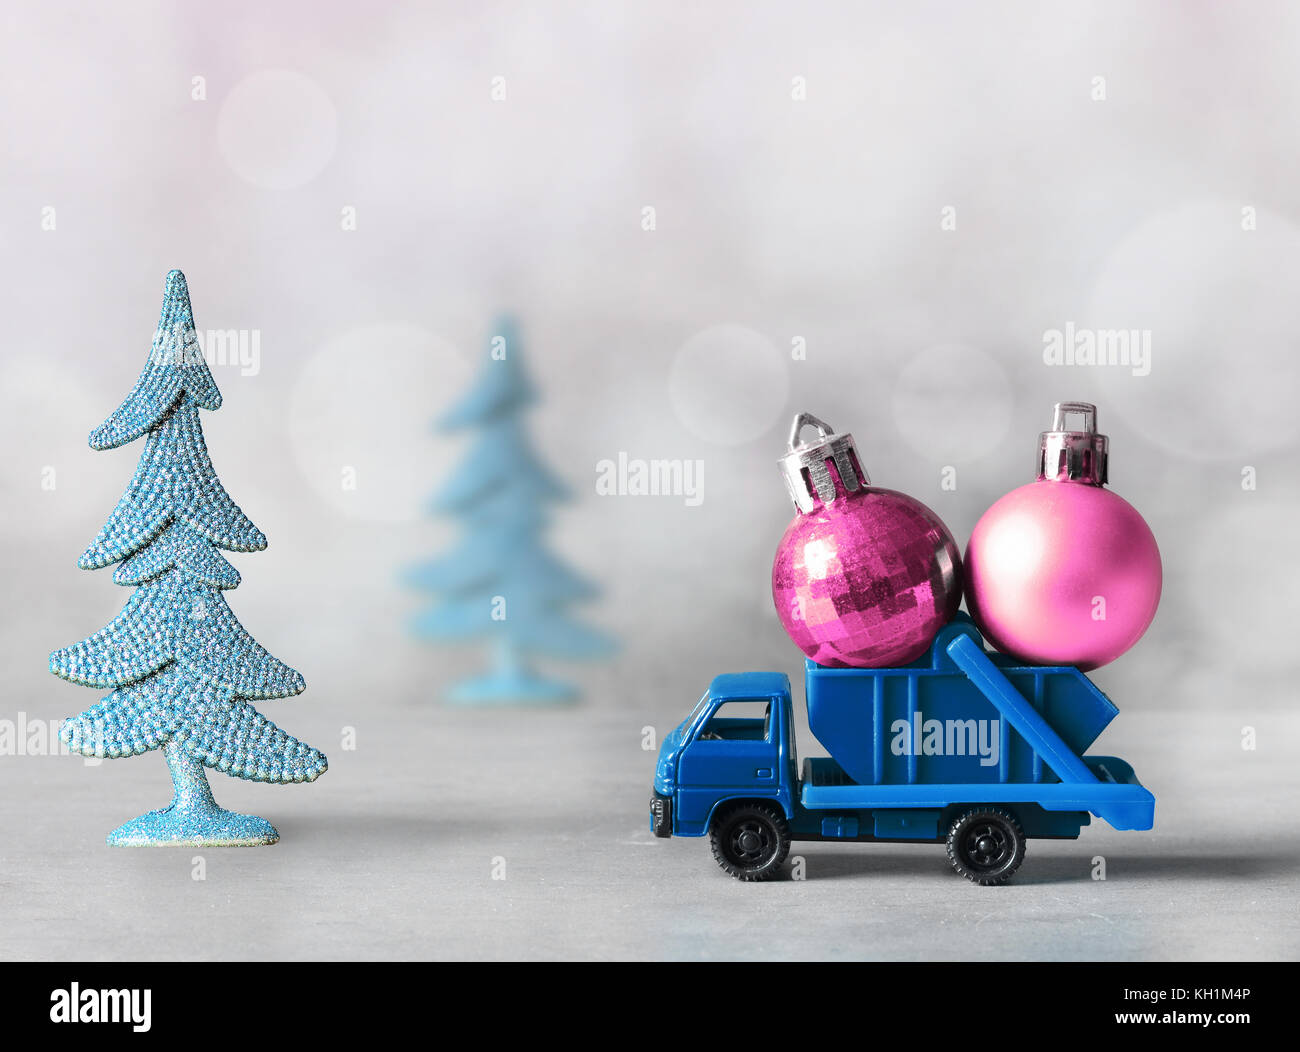 Weihnachtsdekoration . LKW Auto Dekorationen Für Weihnachtsbäume .  Weihnachtskugel Lizenzfreie Fotos, Bilder und Stock Fotografie. Image  88151285.